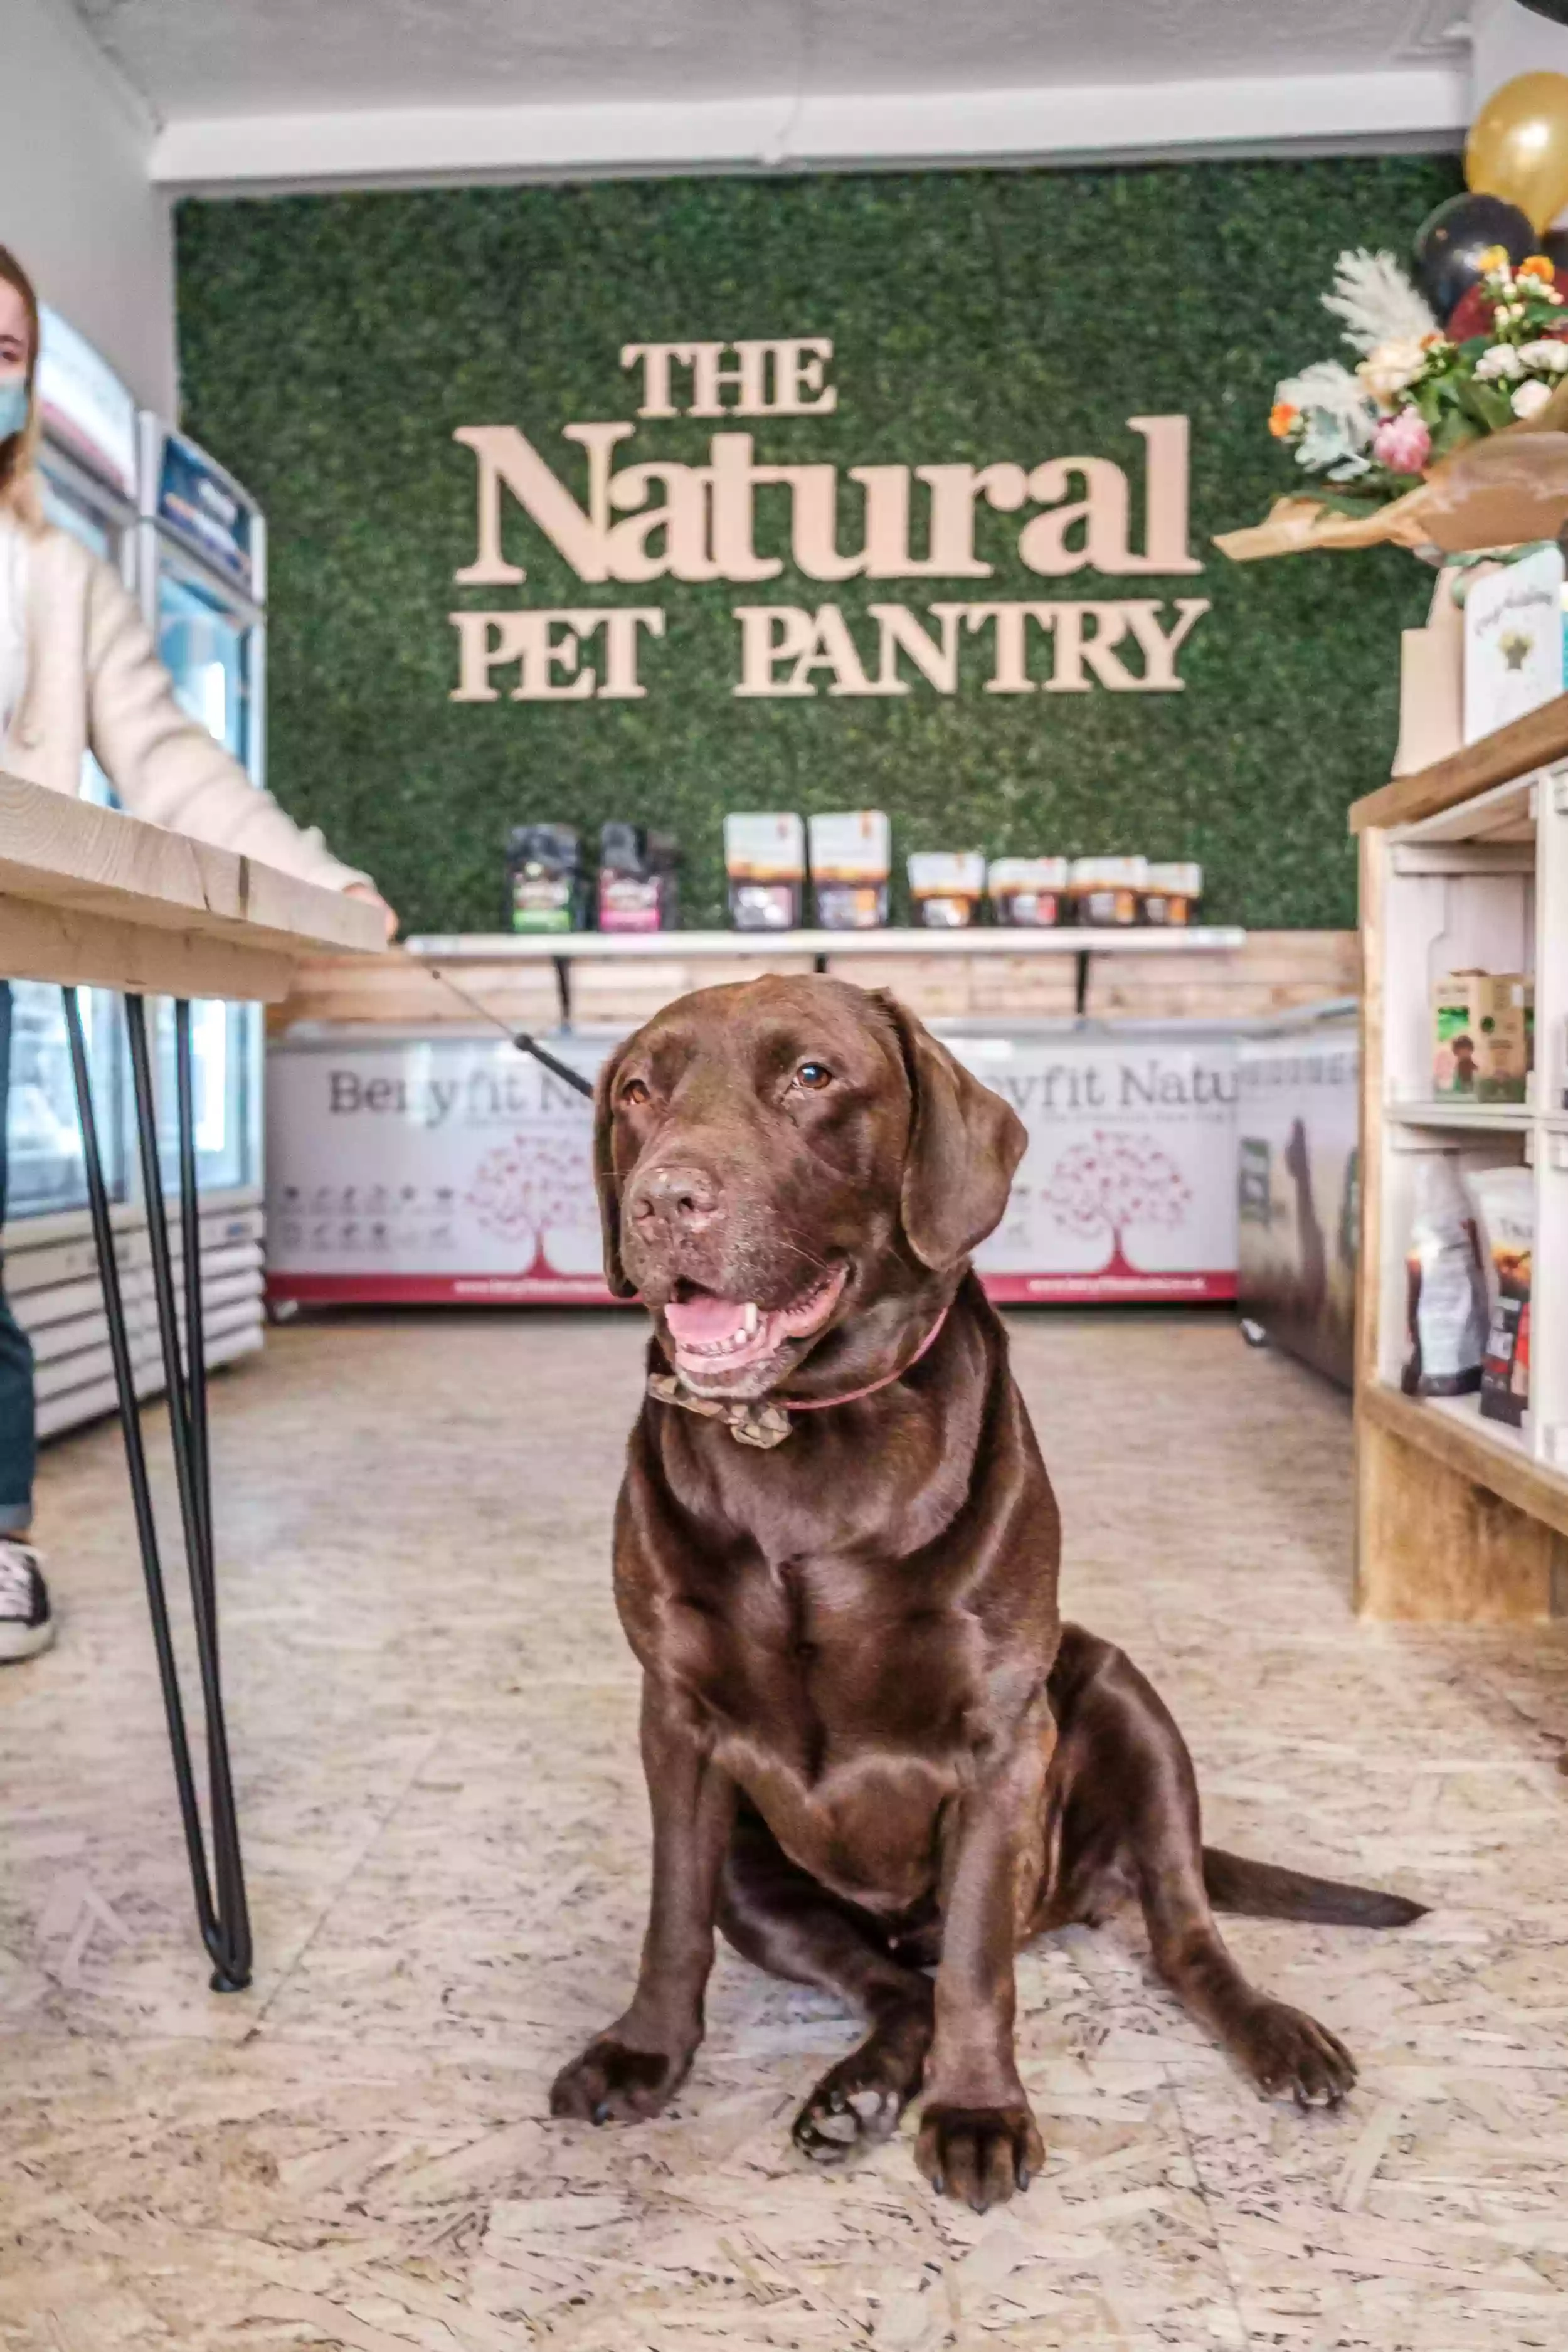 The Natural Pet Pantry ltd